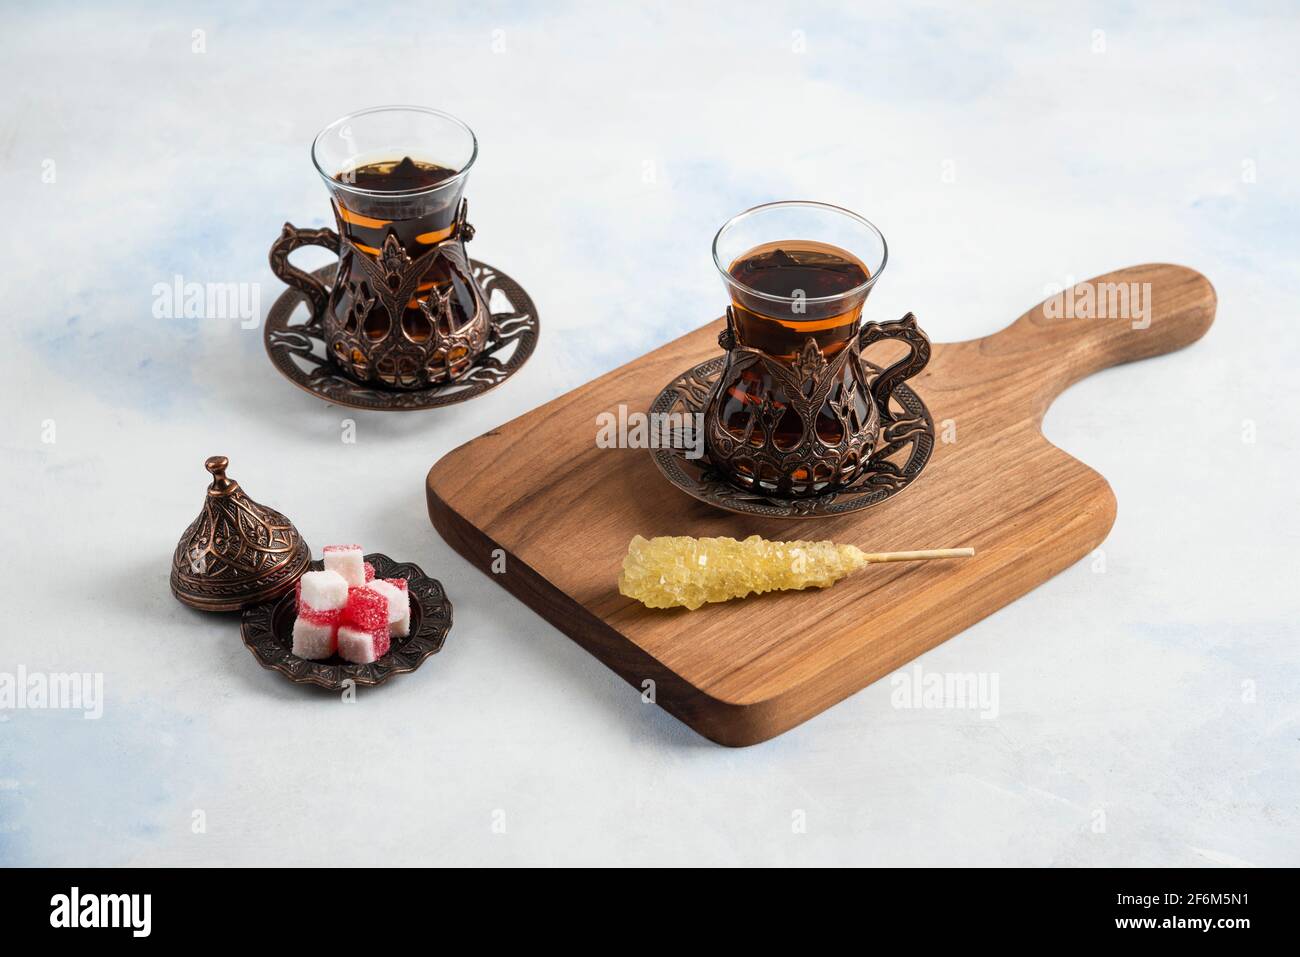 Service de thé turc. Thé parfumé et sucreries Banque D'Images